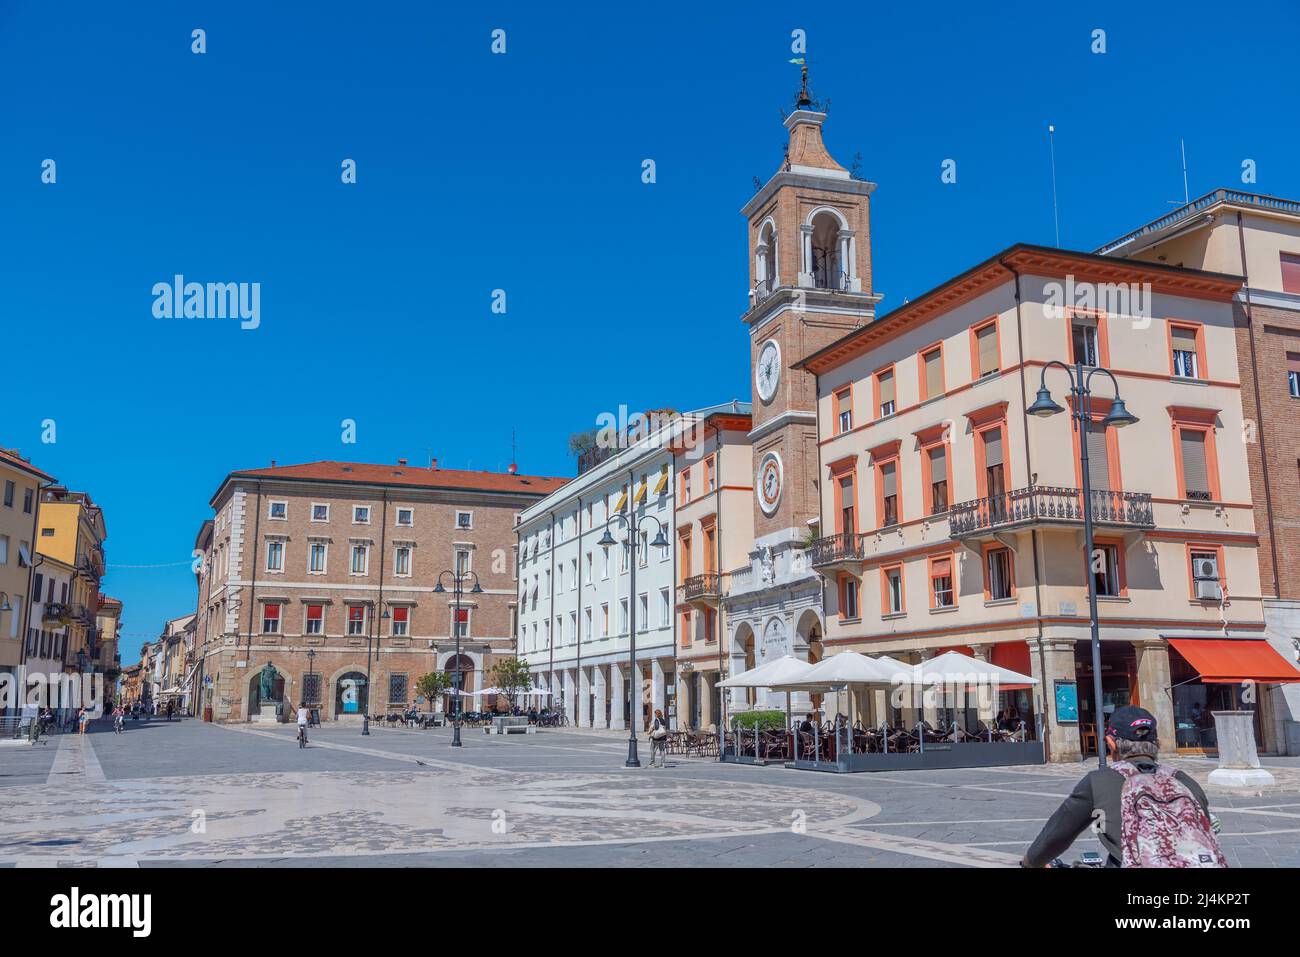 Rimini, Italien, 2. September 2021: Die Menschen passieren einen Uhrenturm auf der piazza Martiri in der italienischen Stadt rimini. Stockfoto